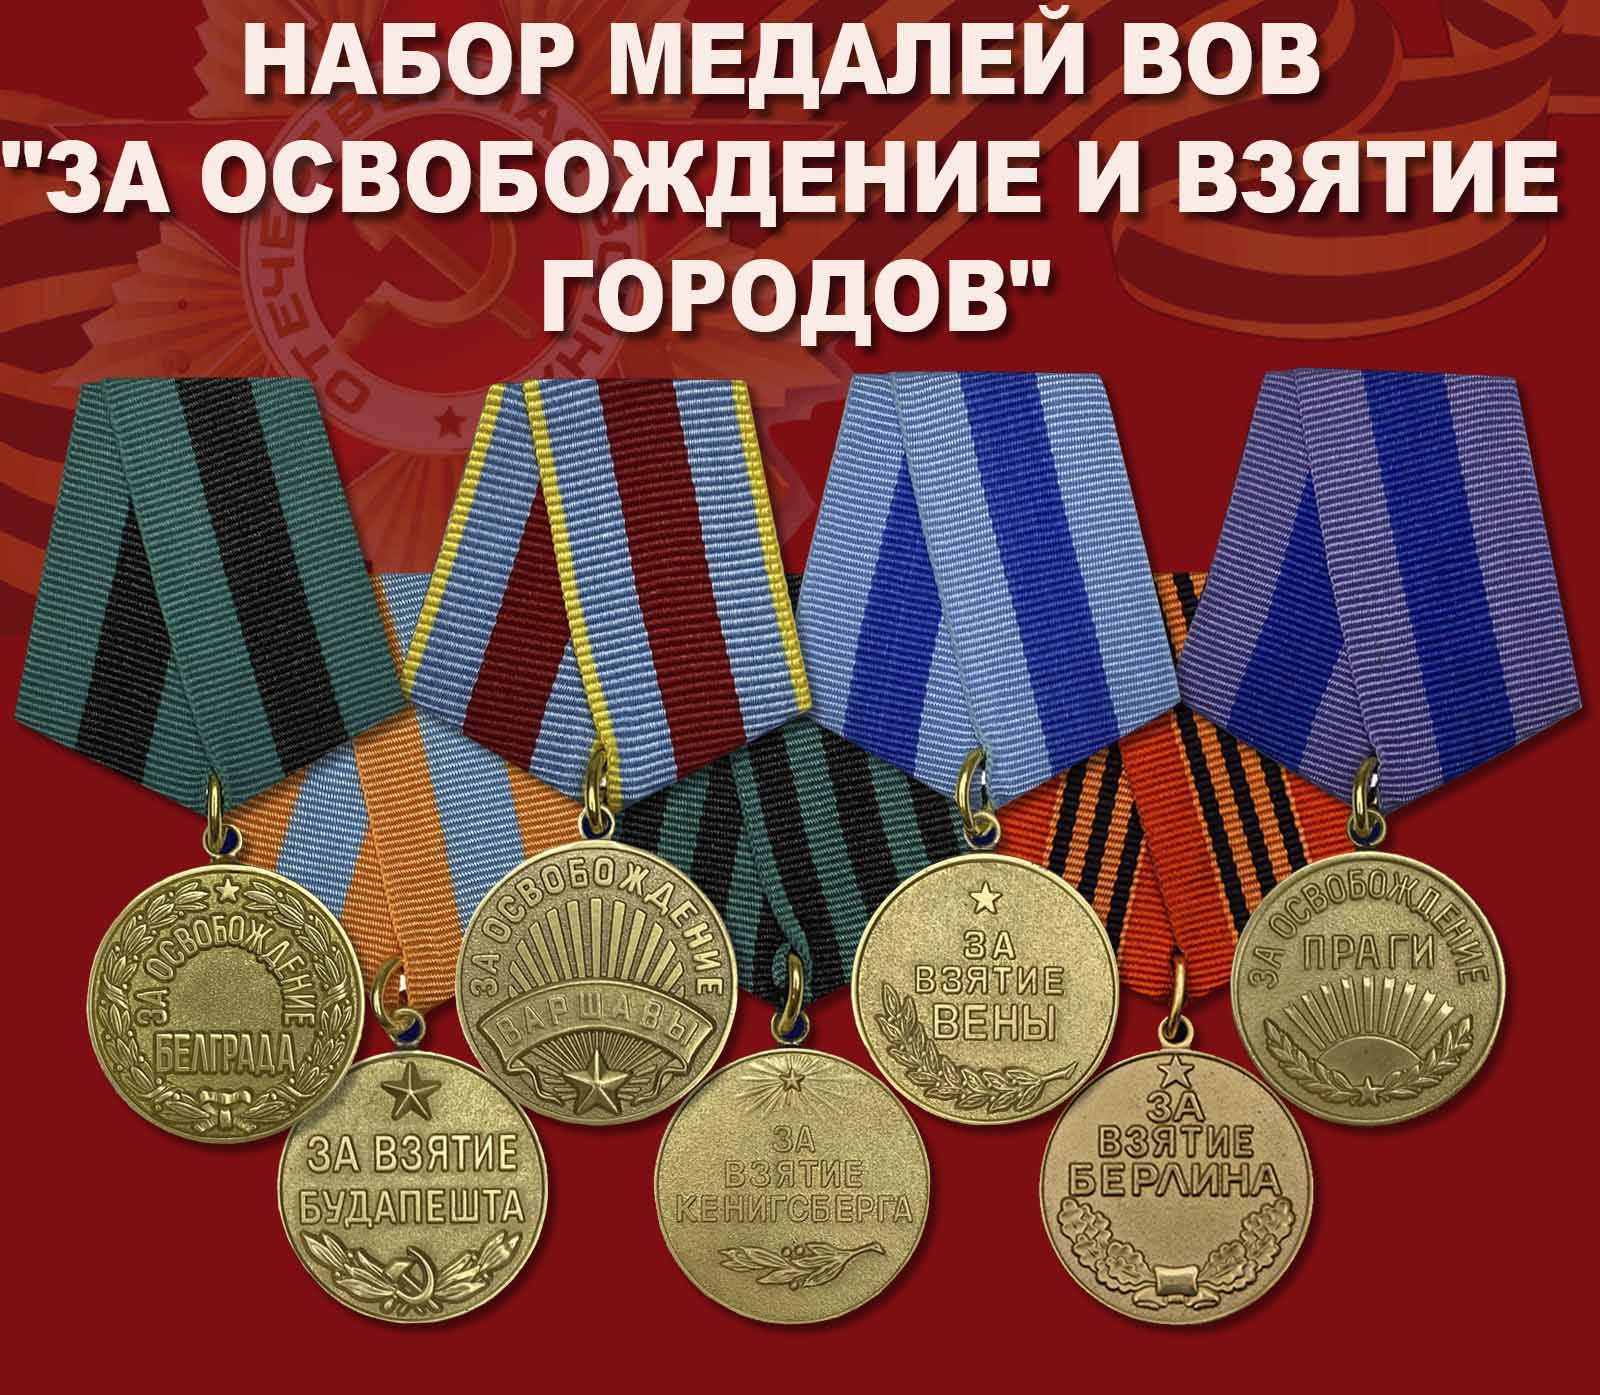 Купить набор медалей ВОВ "За освобождение и взятие городов"